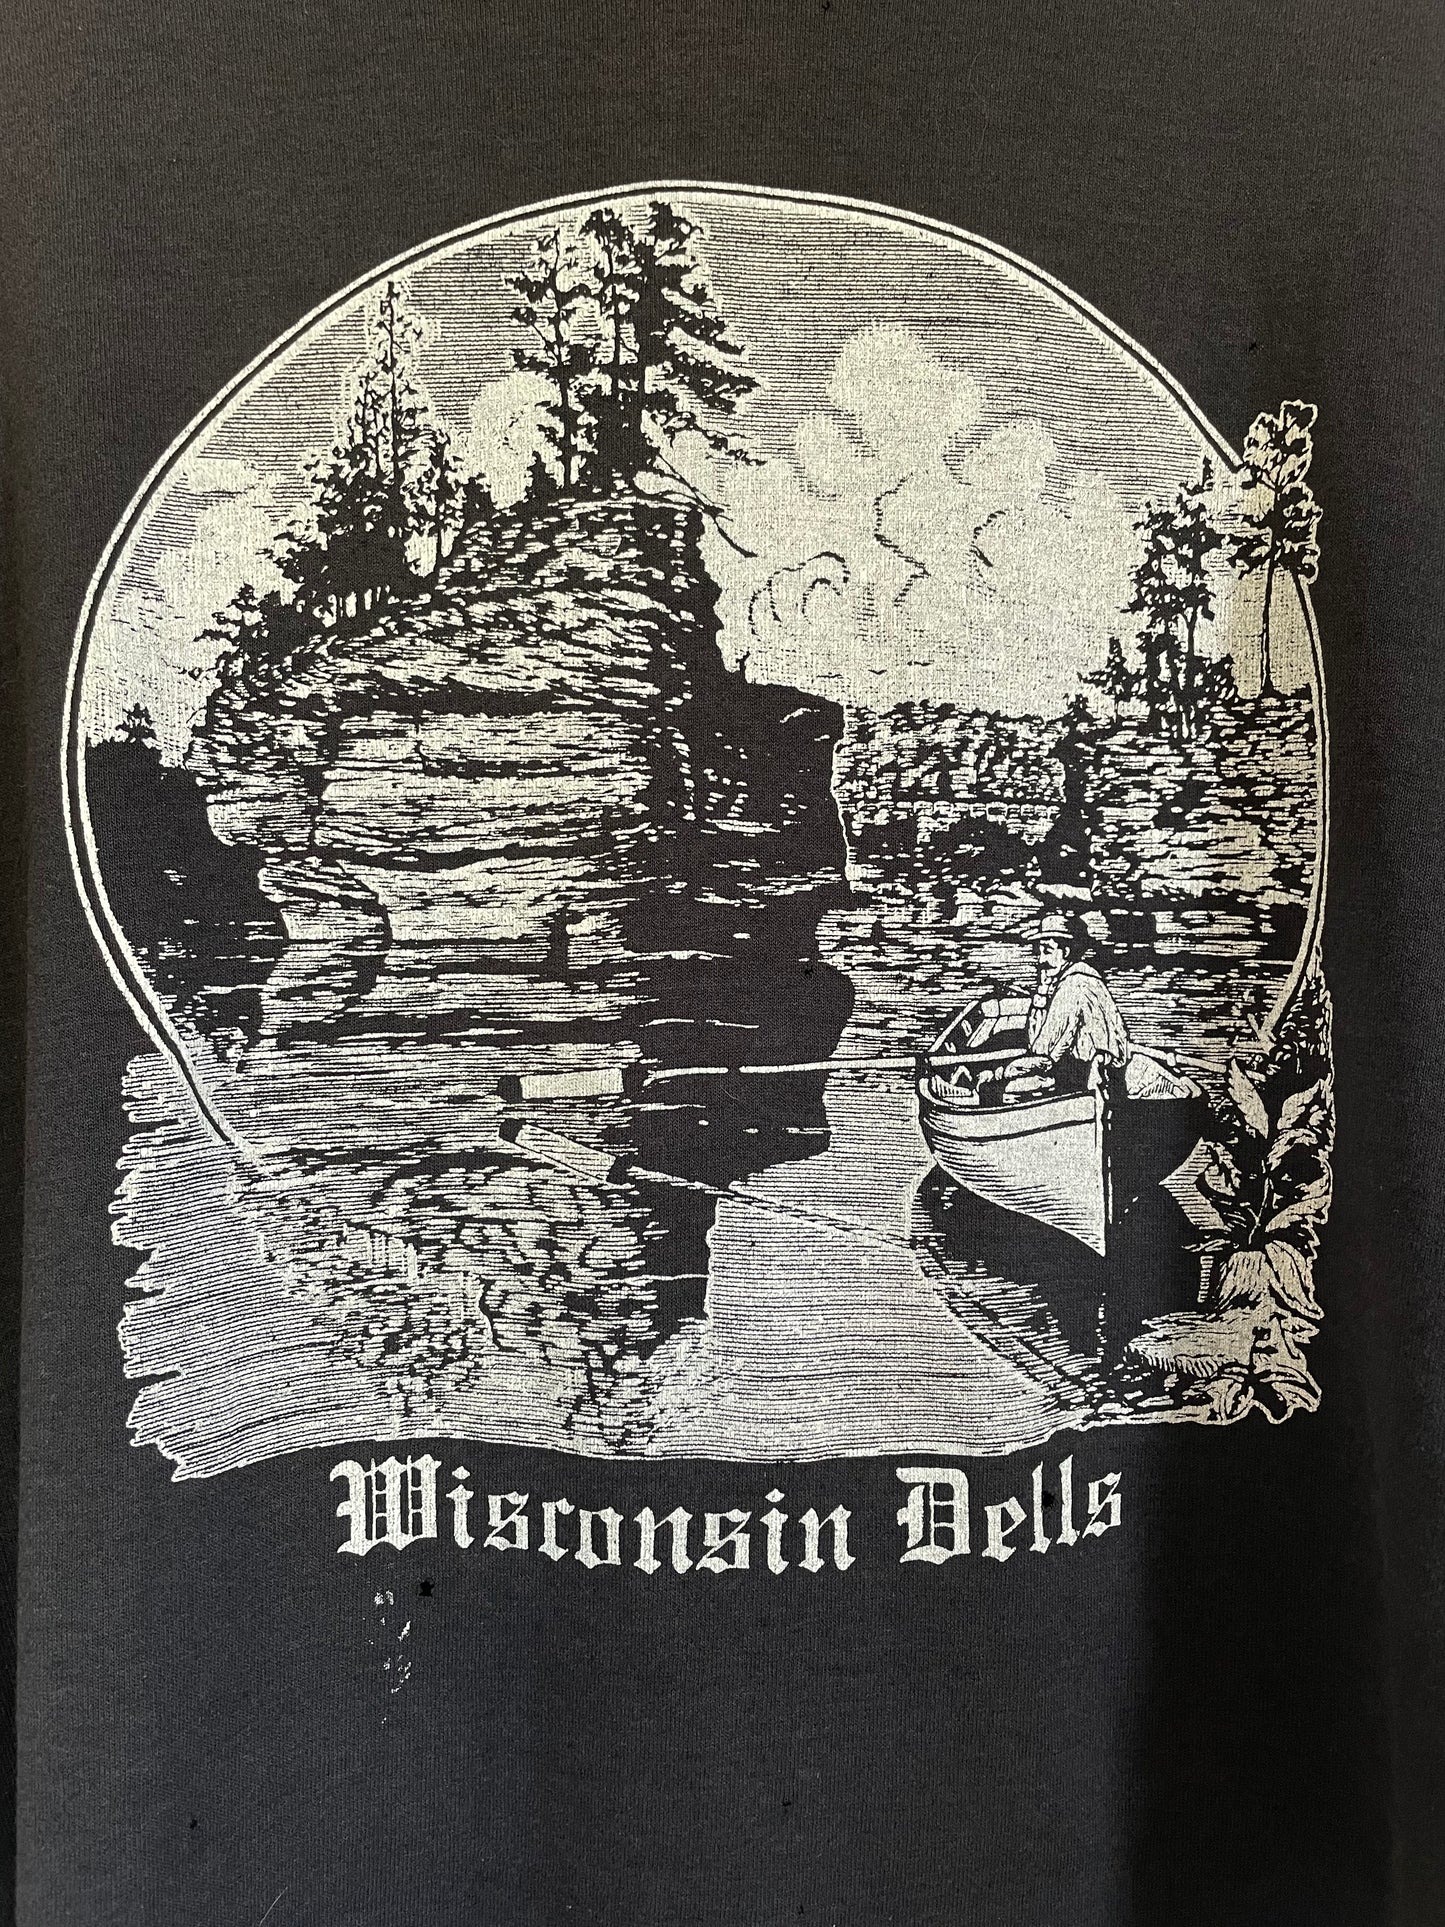 70s Wisconsin Dells Tee